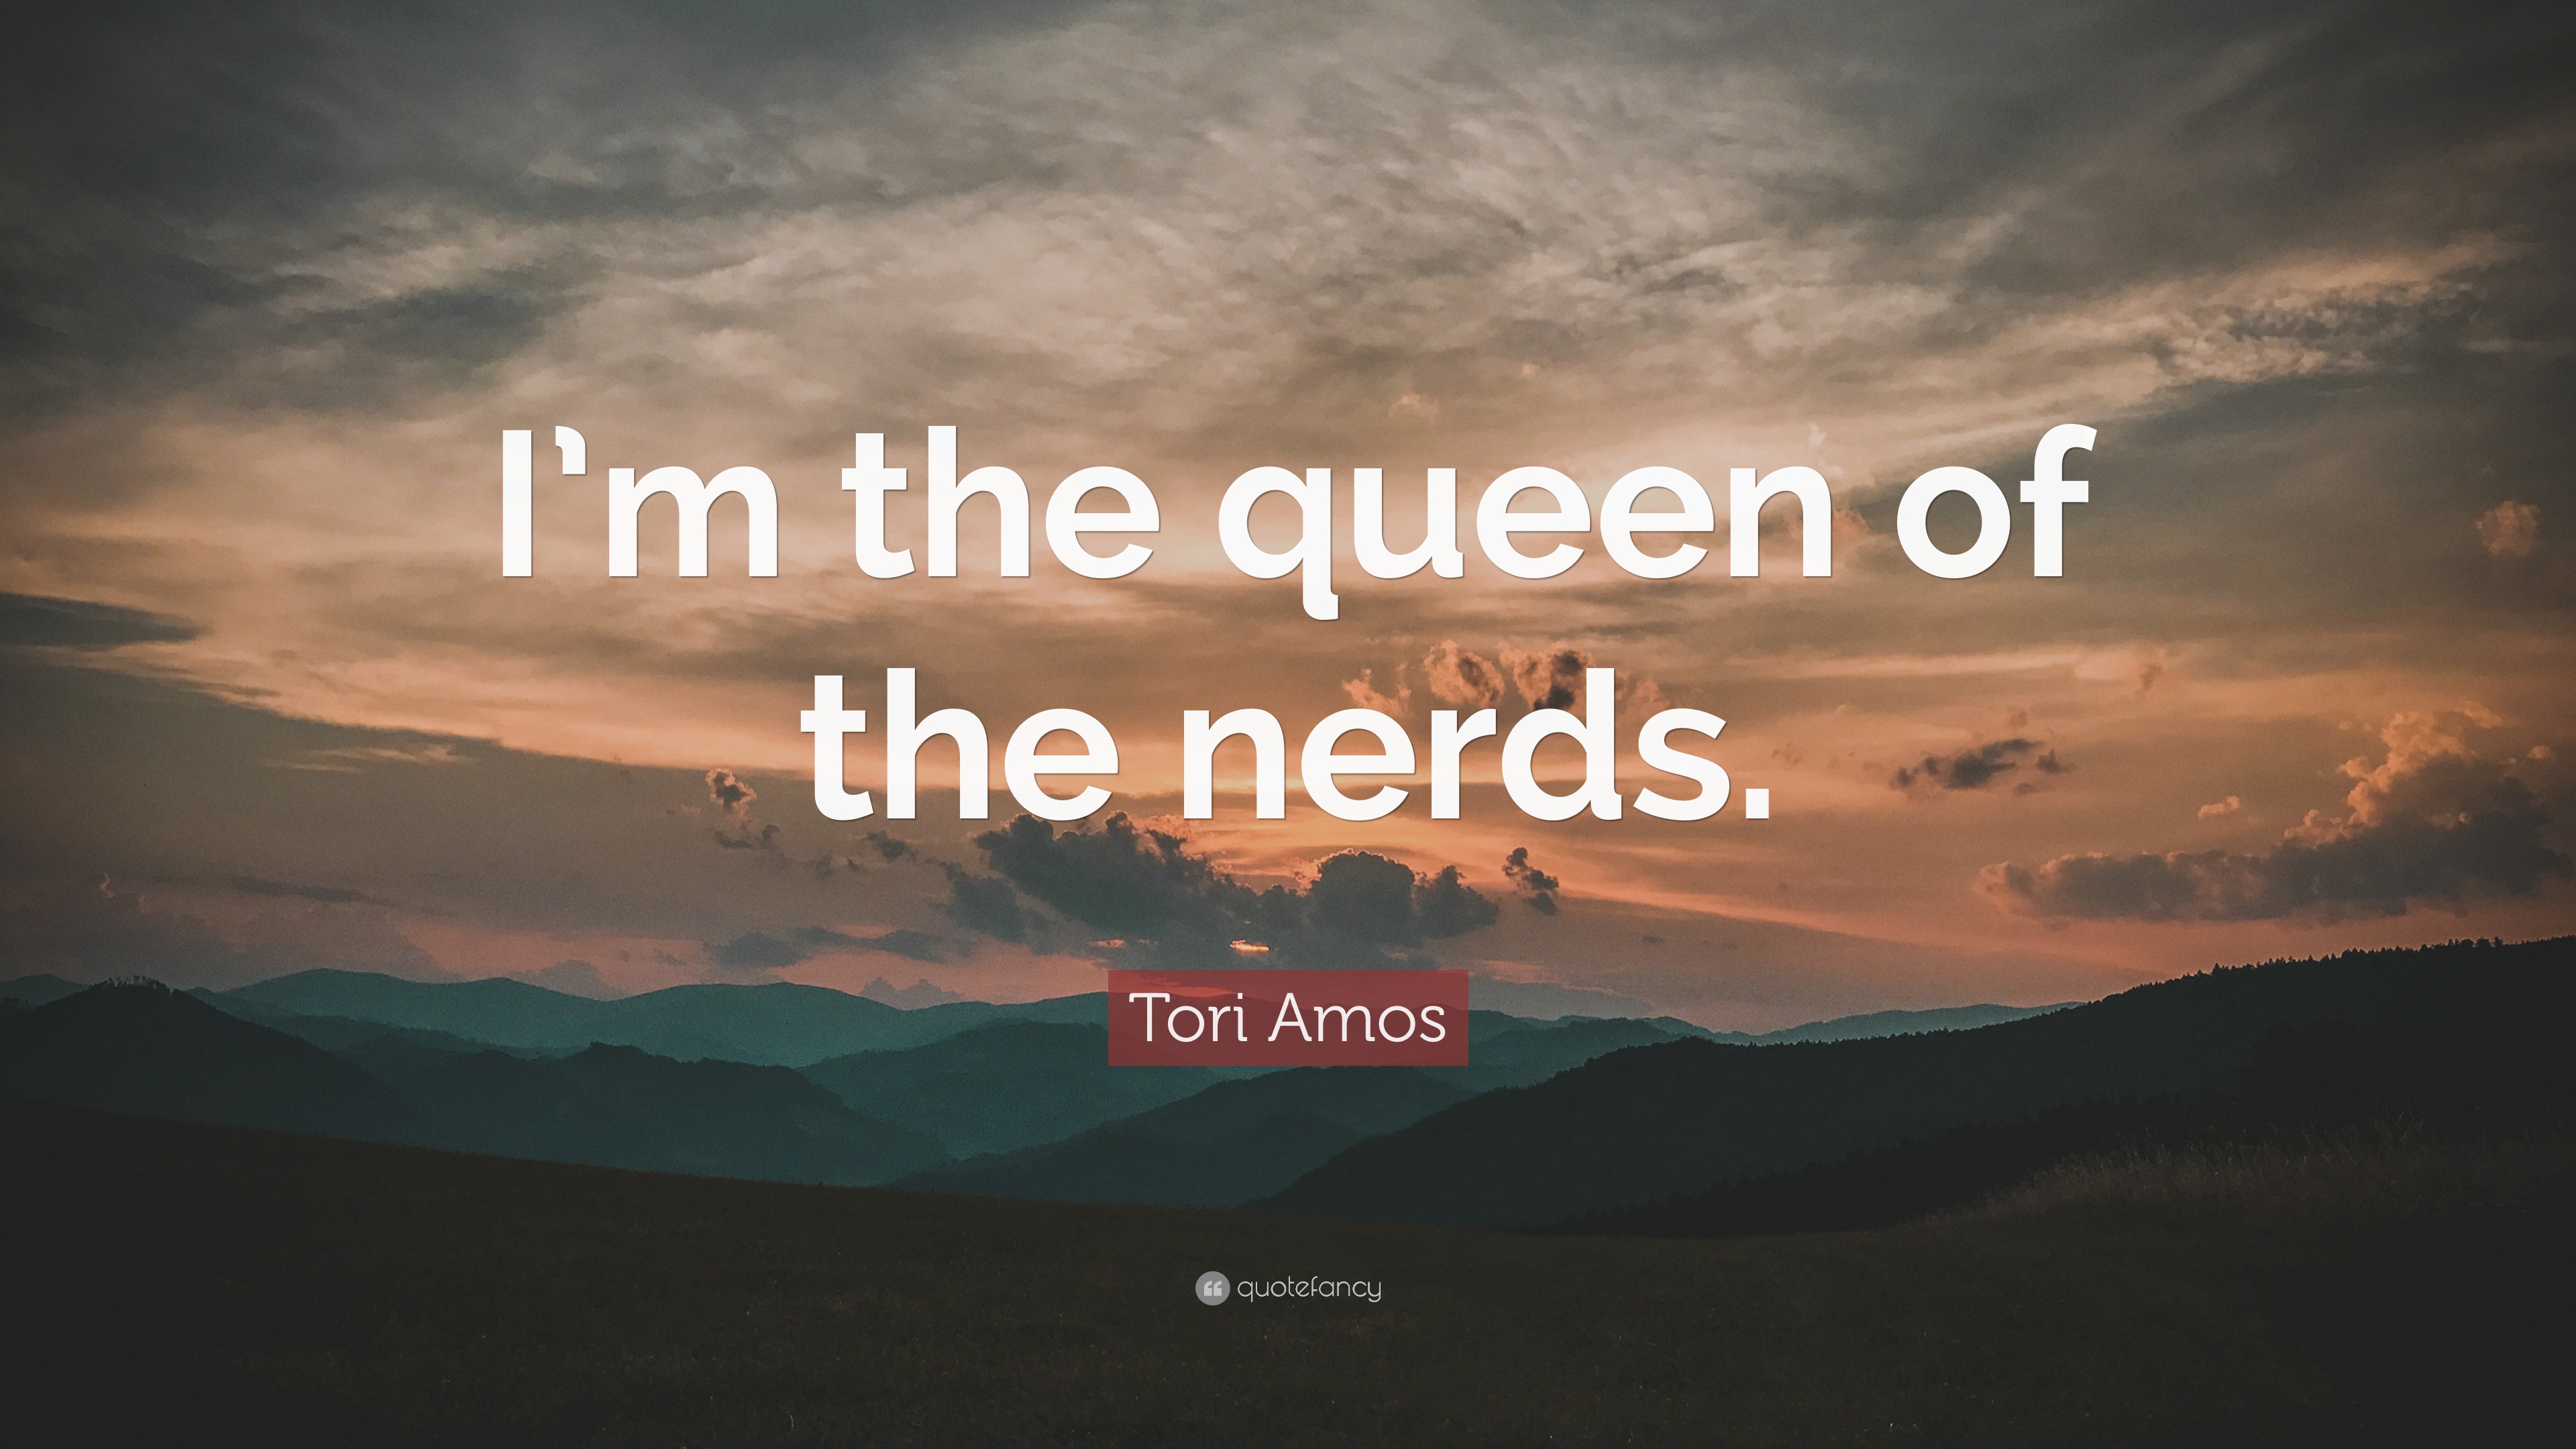 Queen of the nerds